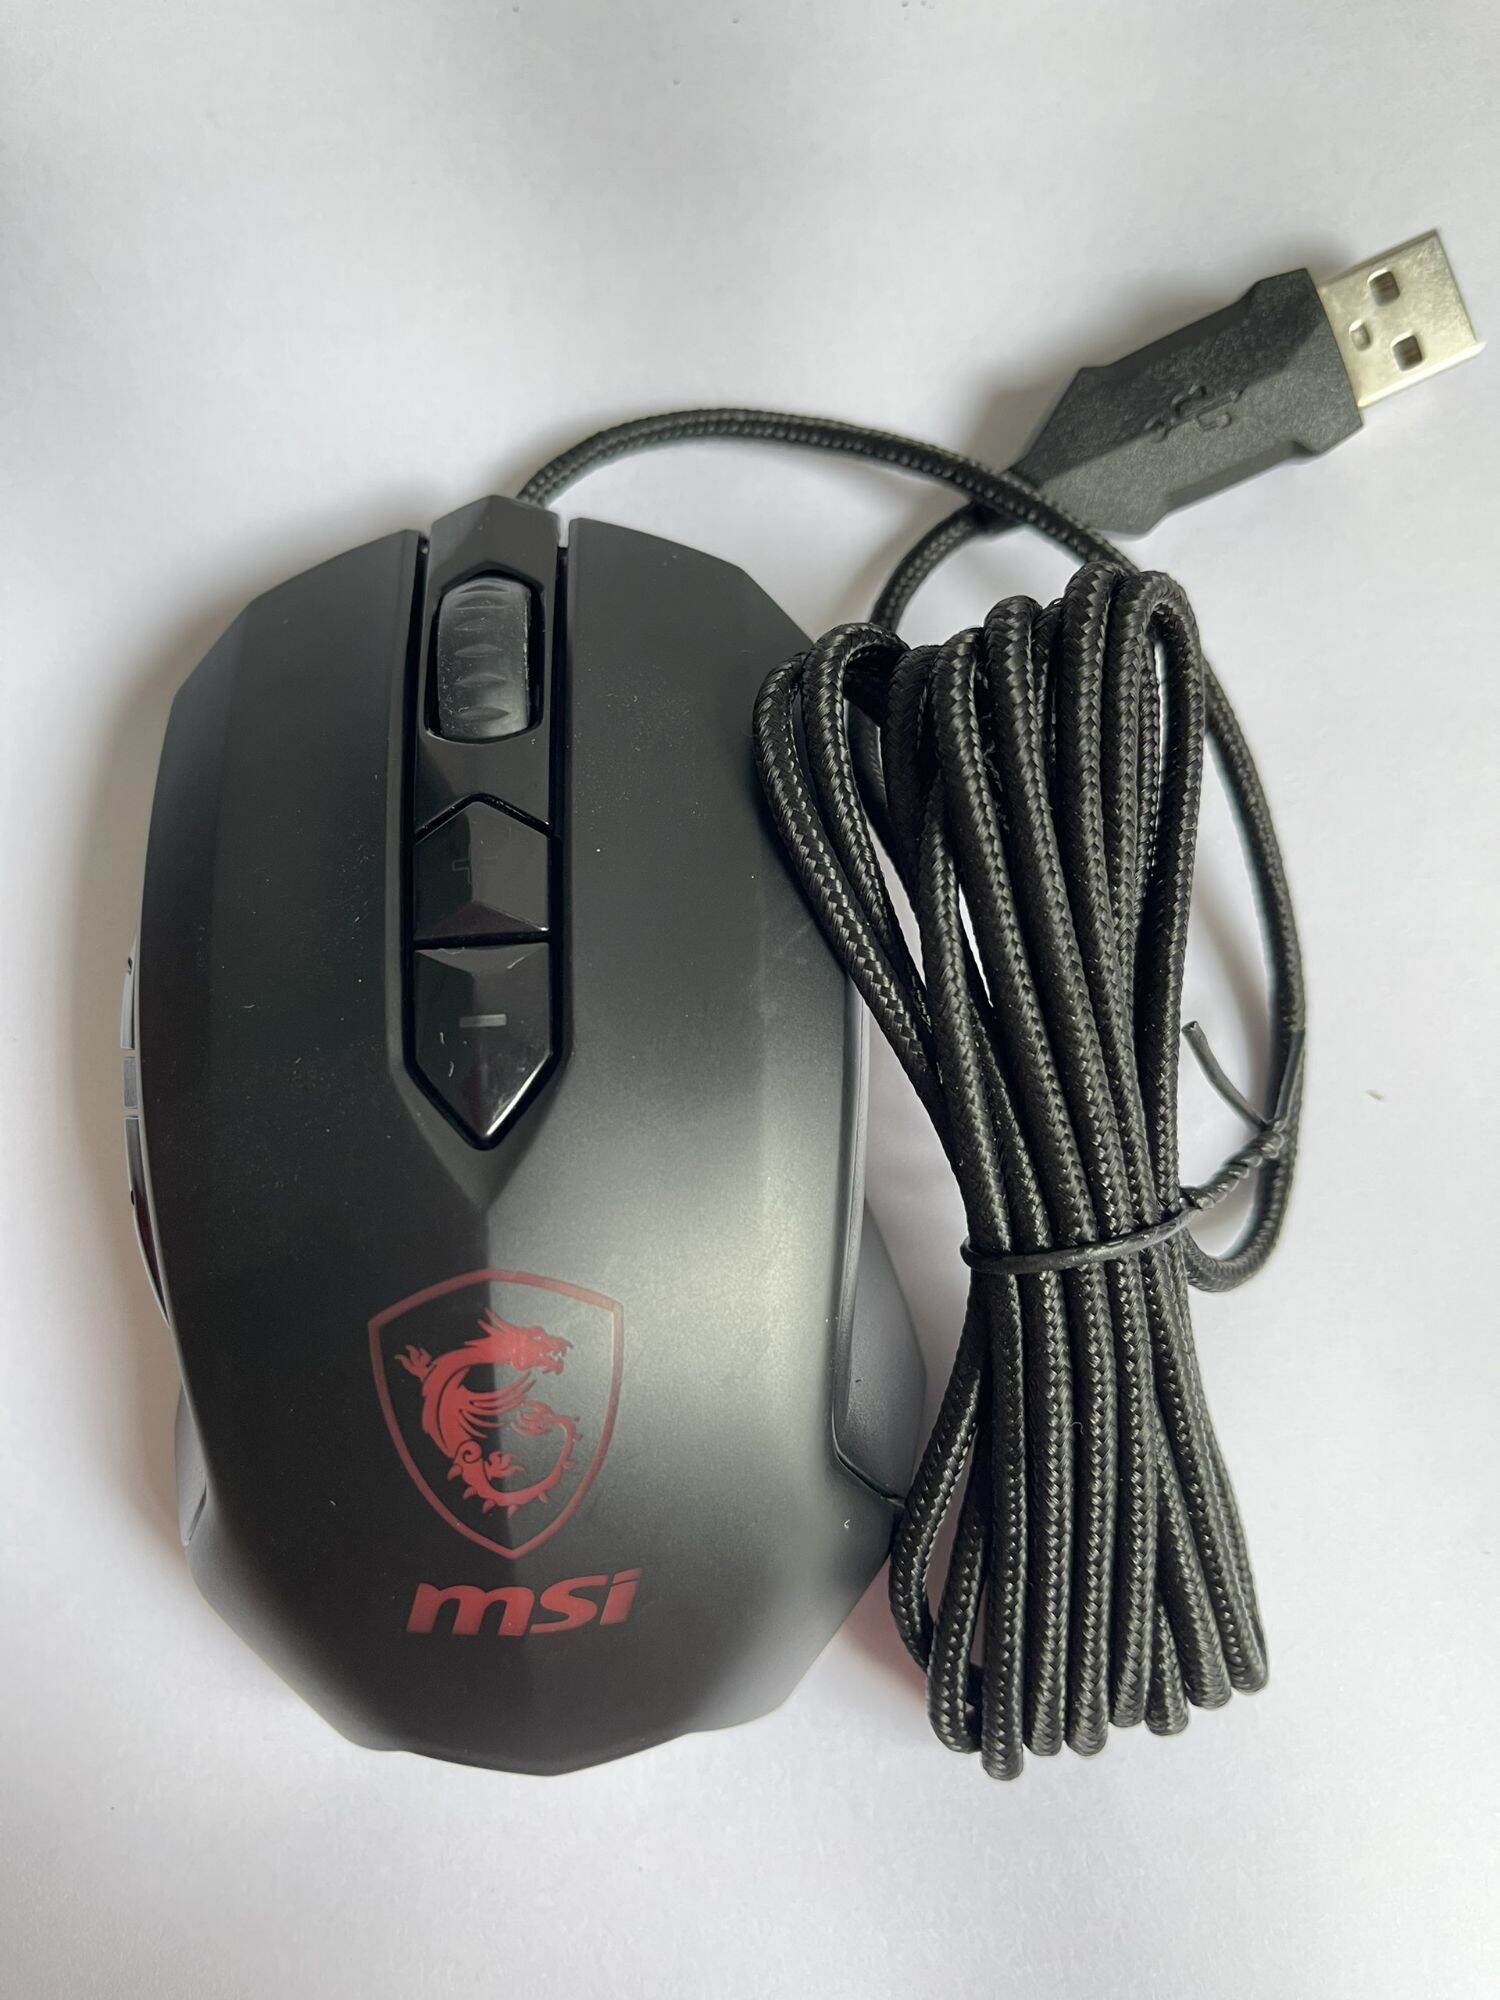 Chuột Gaming MSI M88 chính hãng( không hộp, mới 90%) thumbnail